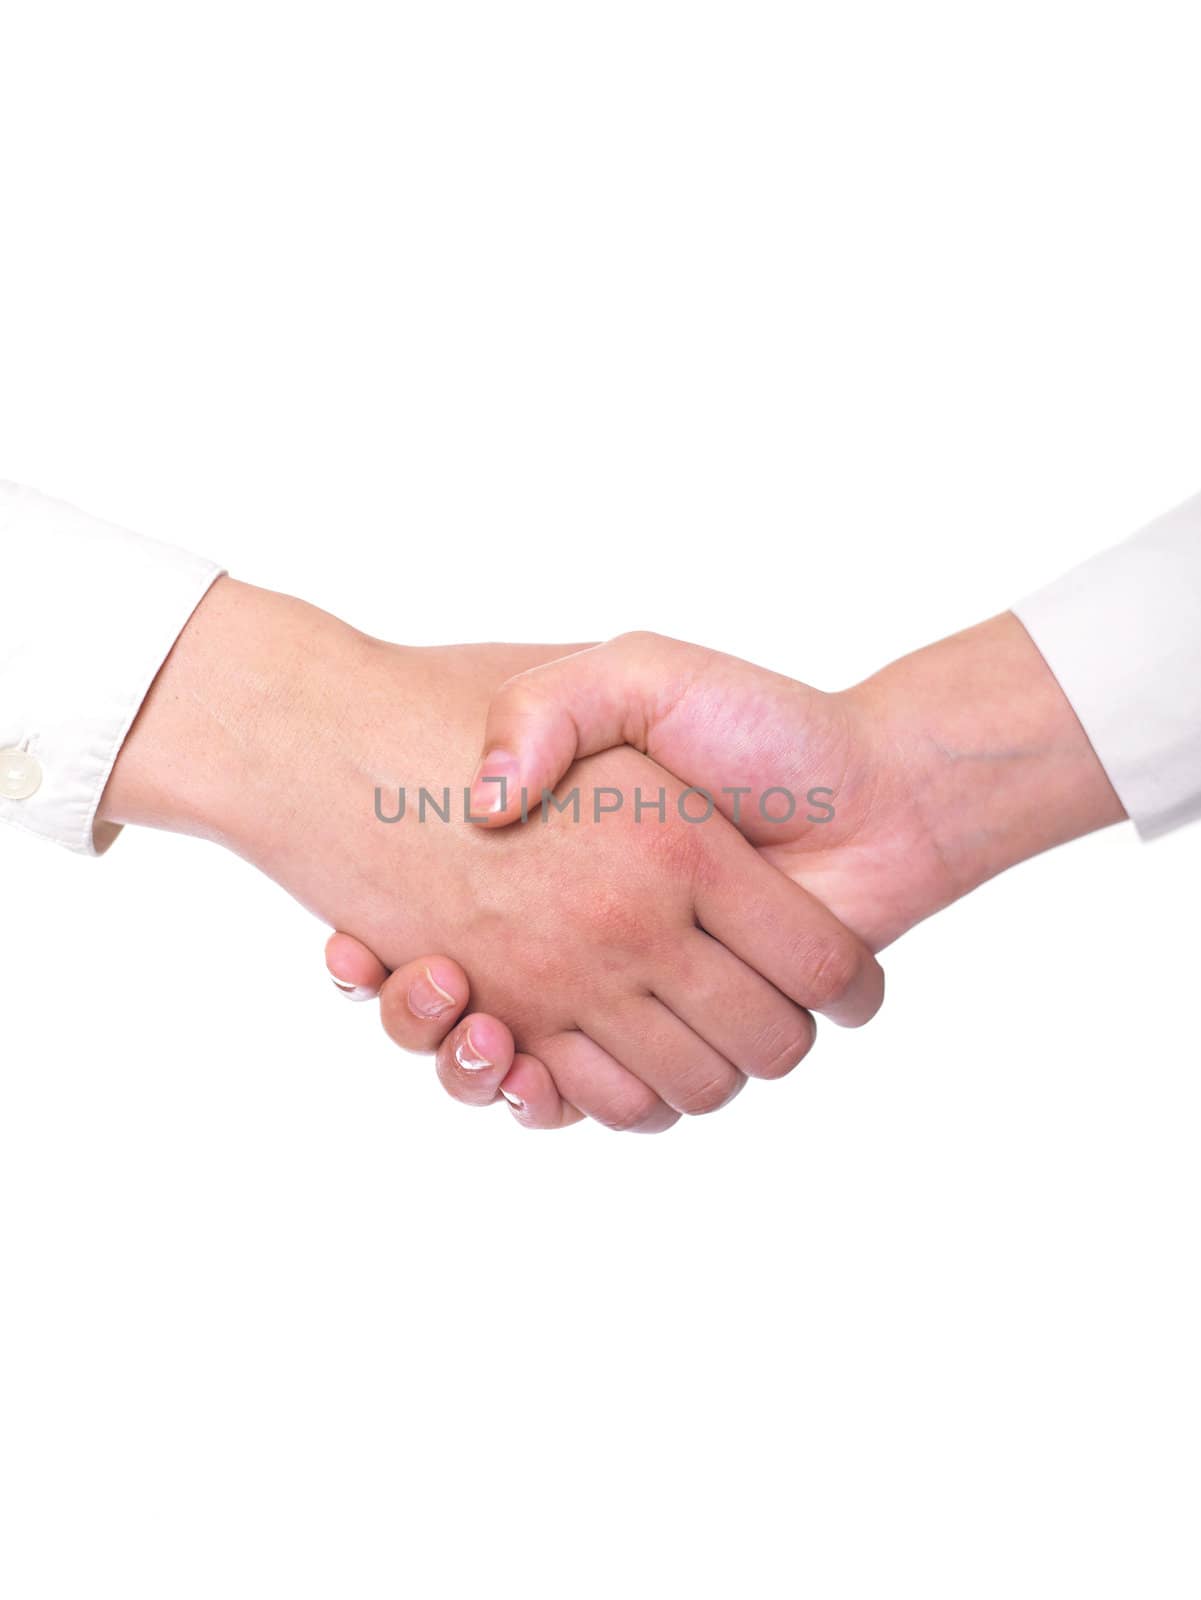 Handshaking - Team Work by adamr